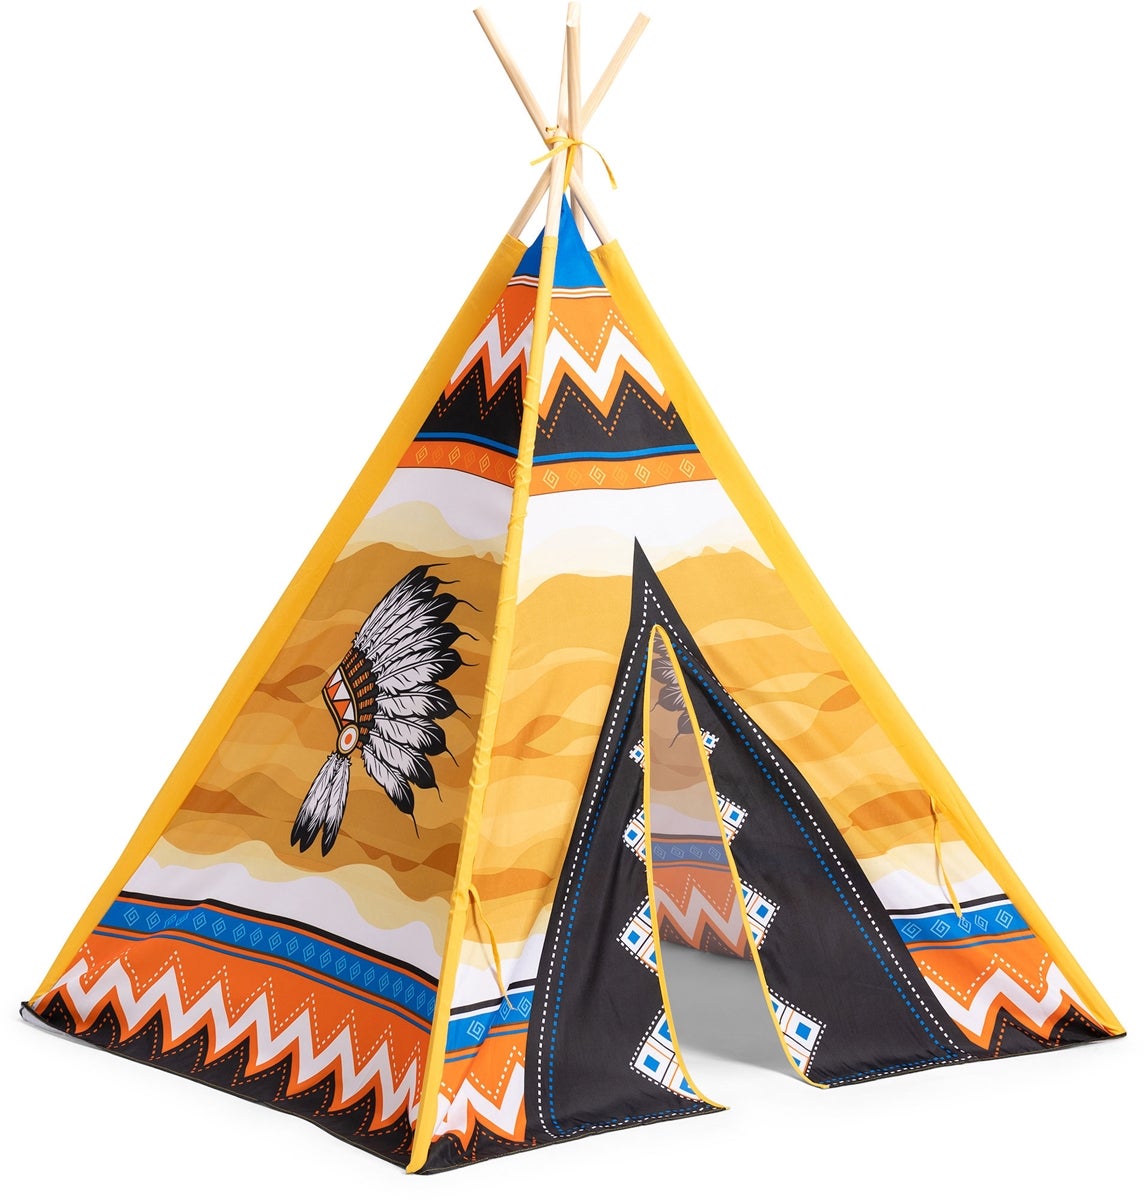 Tipi Teepee Indianerzelt Kinder Indianer Spielzelt Zelt mit 3 Kissen GRATIS !! 